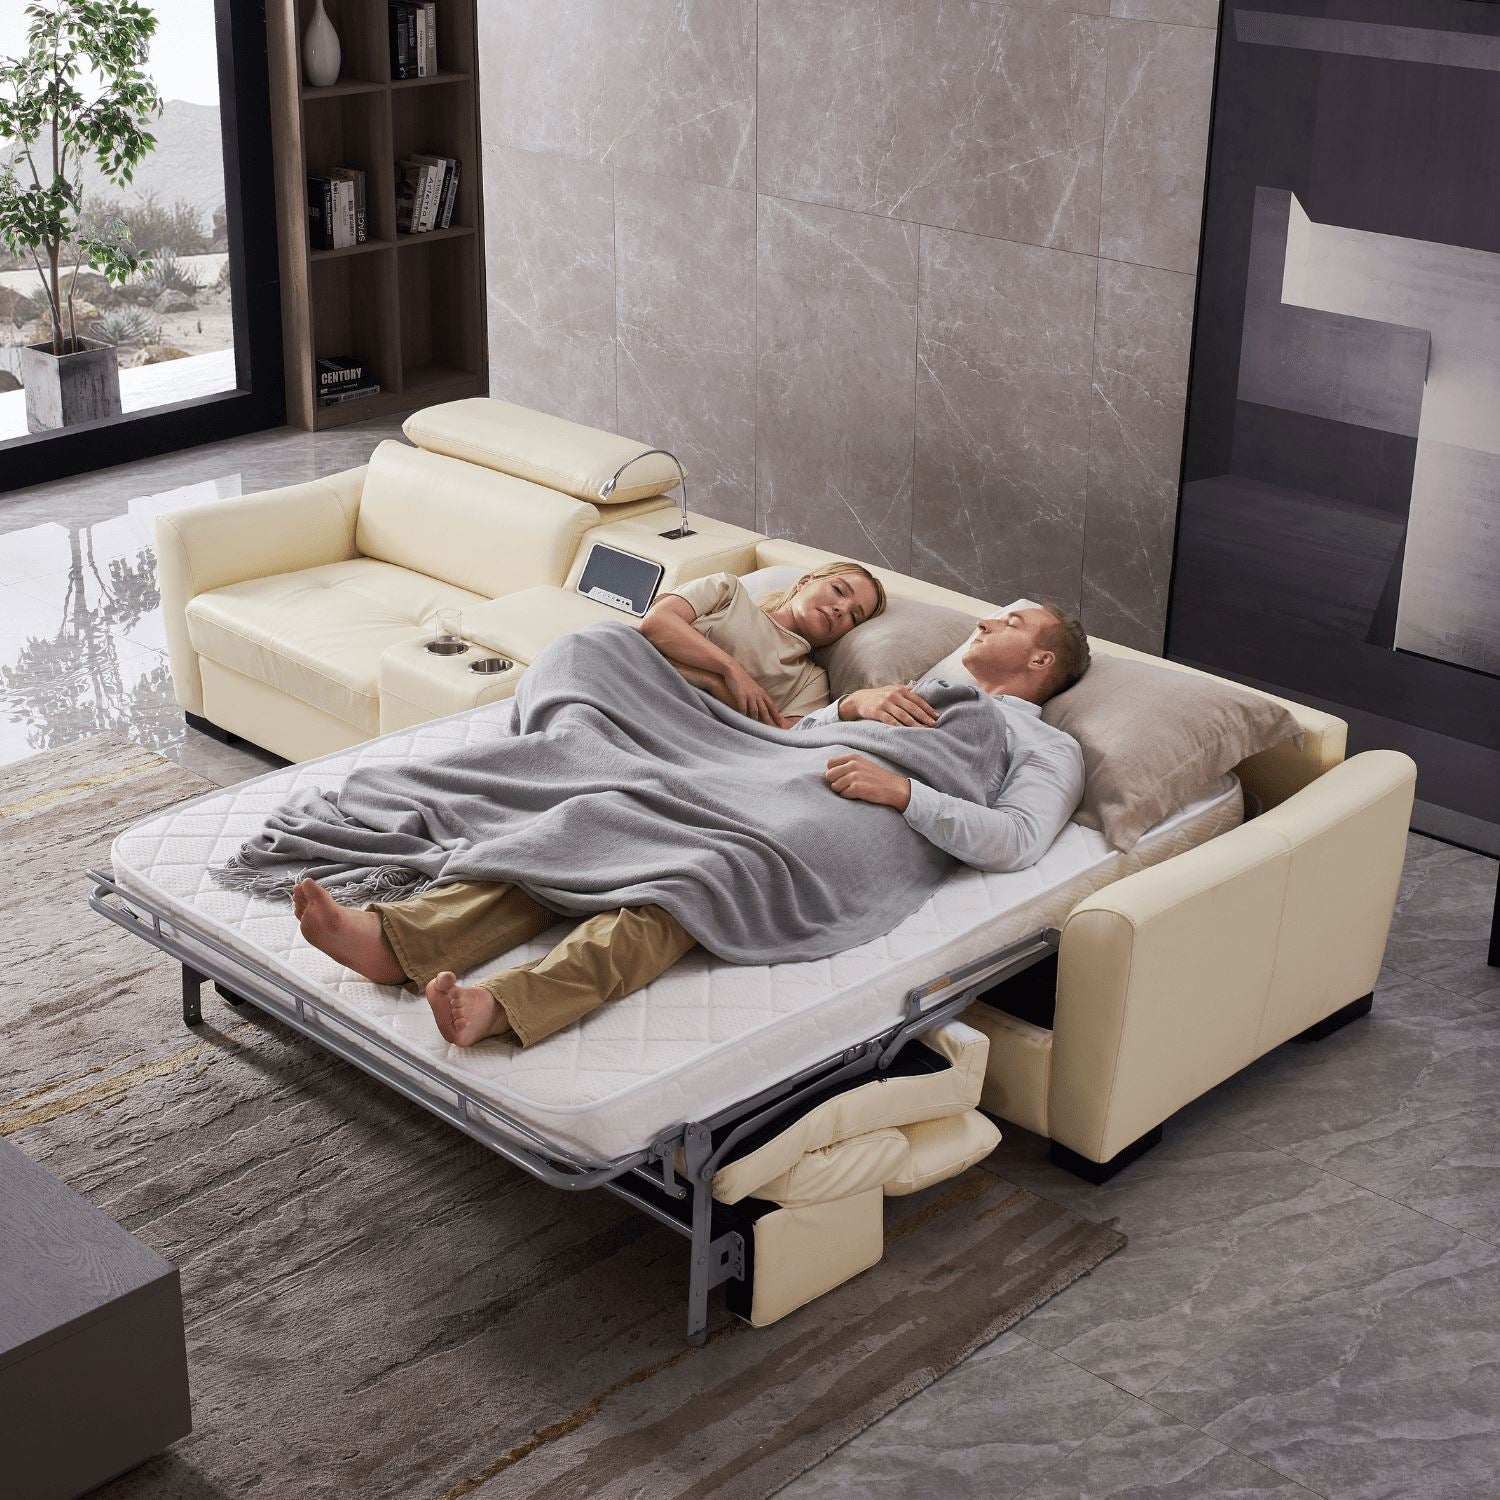 Spazio Sofa Bed - Valyou 